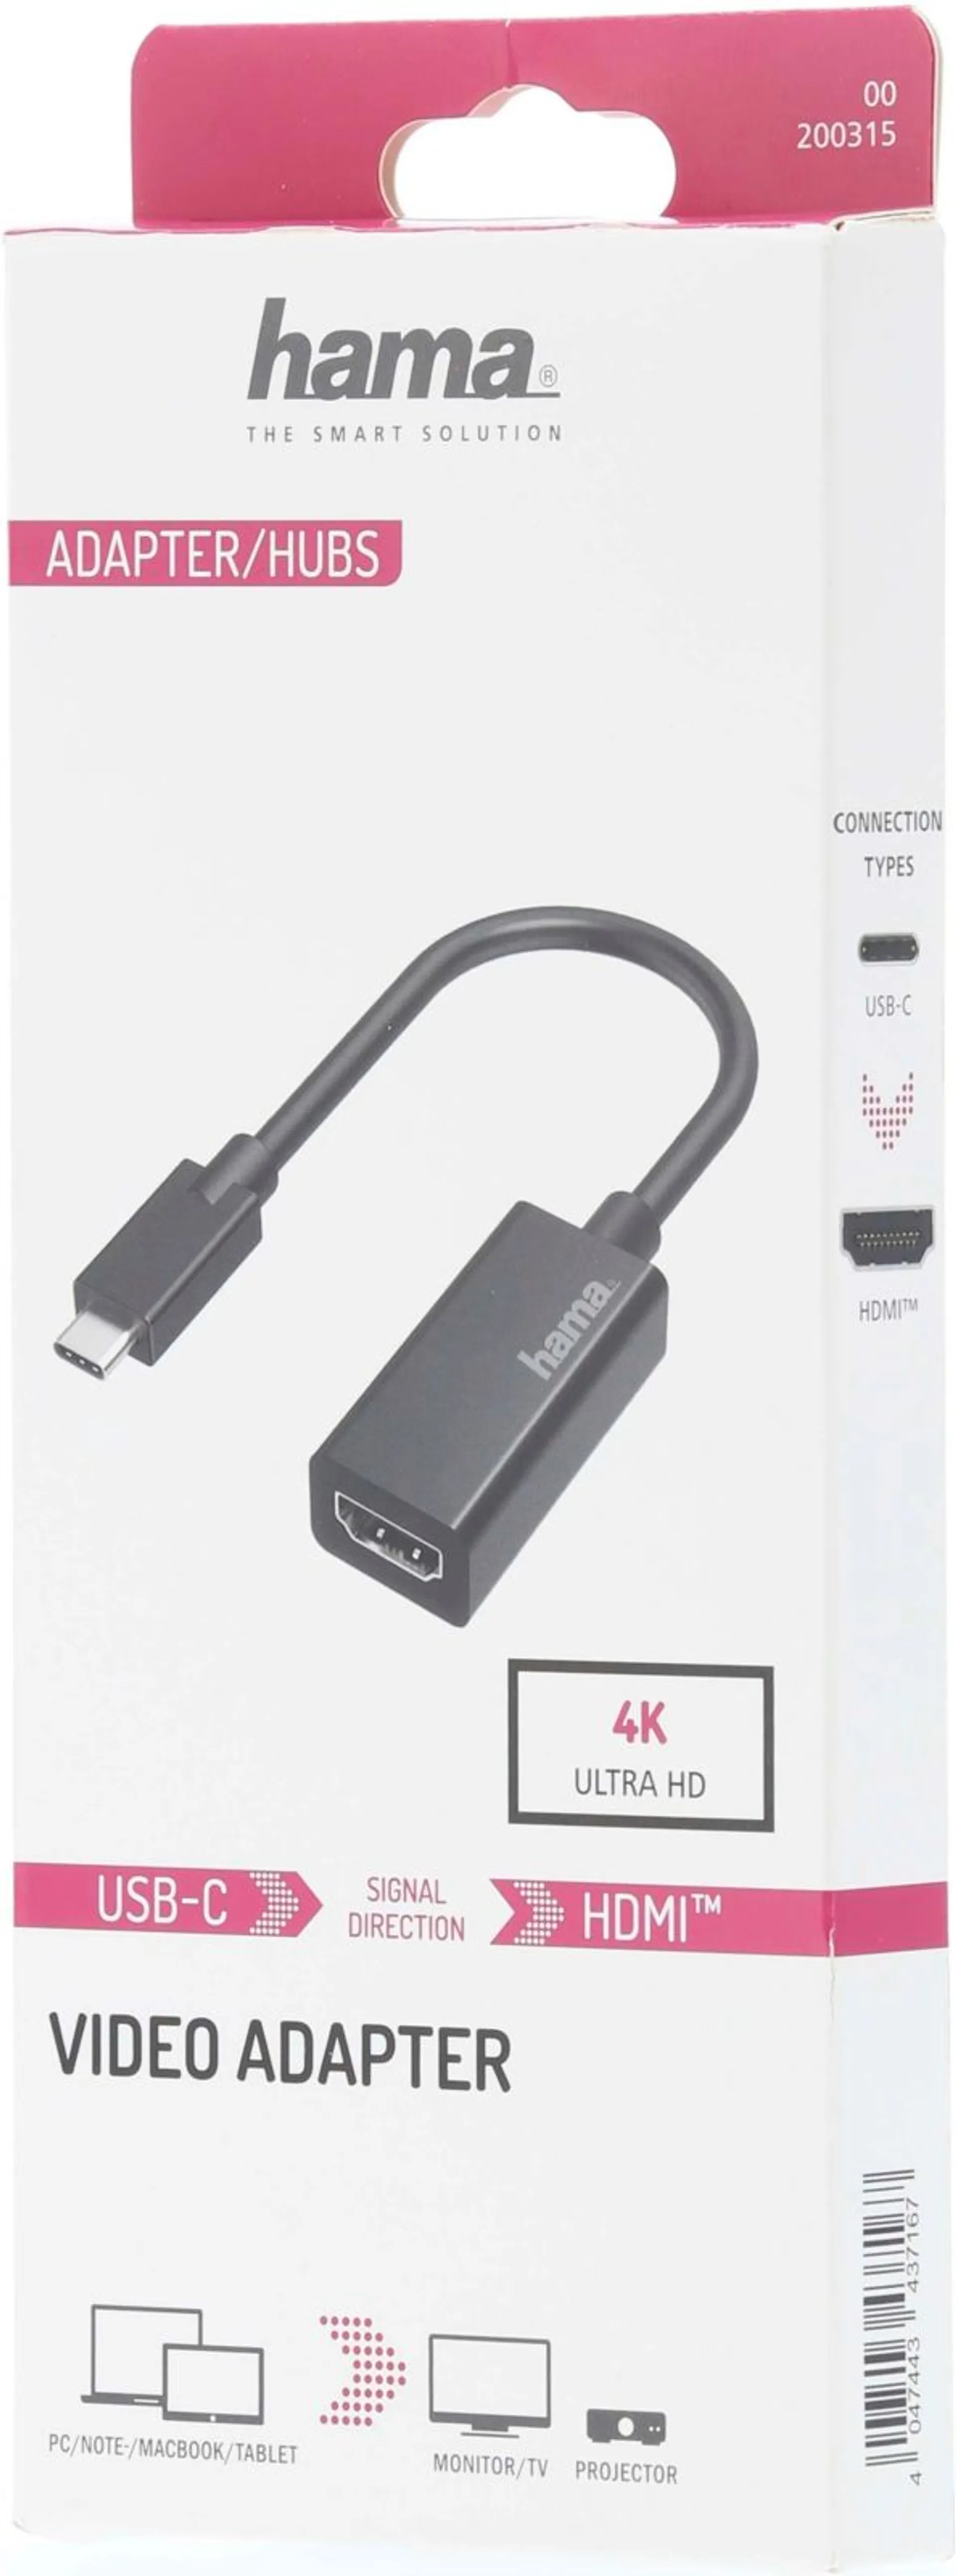 Hama Videoadapteri, USB-C uros - HDMI™ naaras, Ultra HD 4K - 2